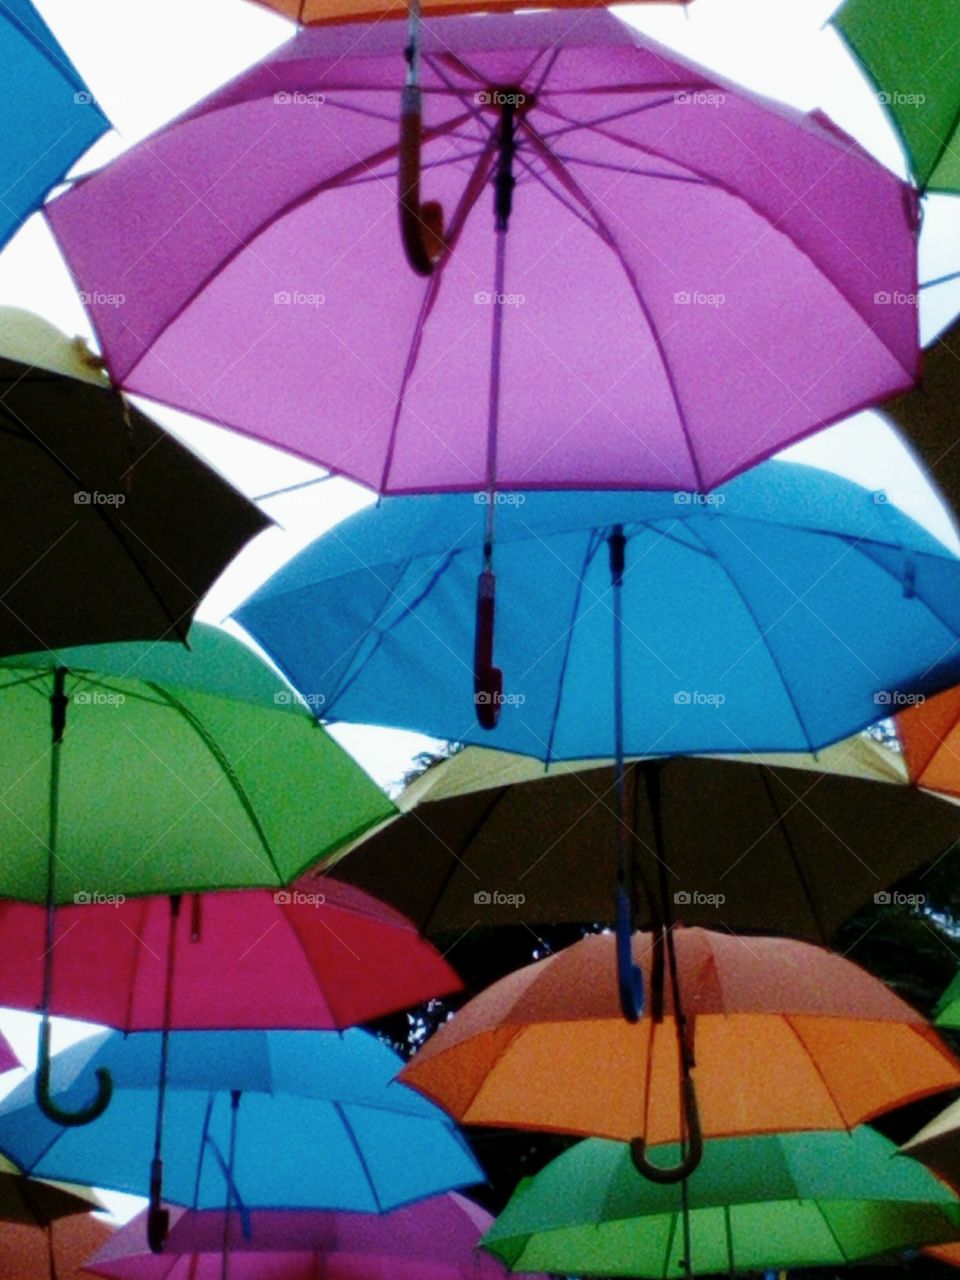 Colorful Umbrella Roof